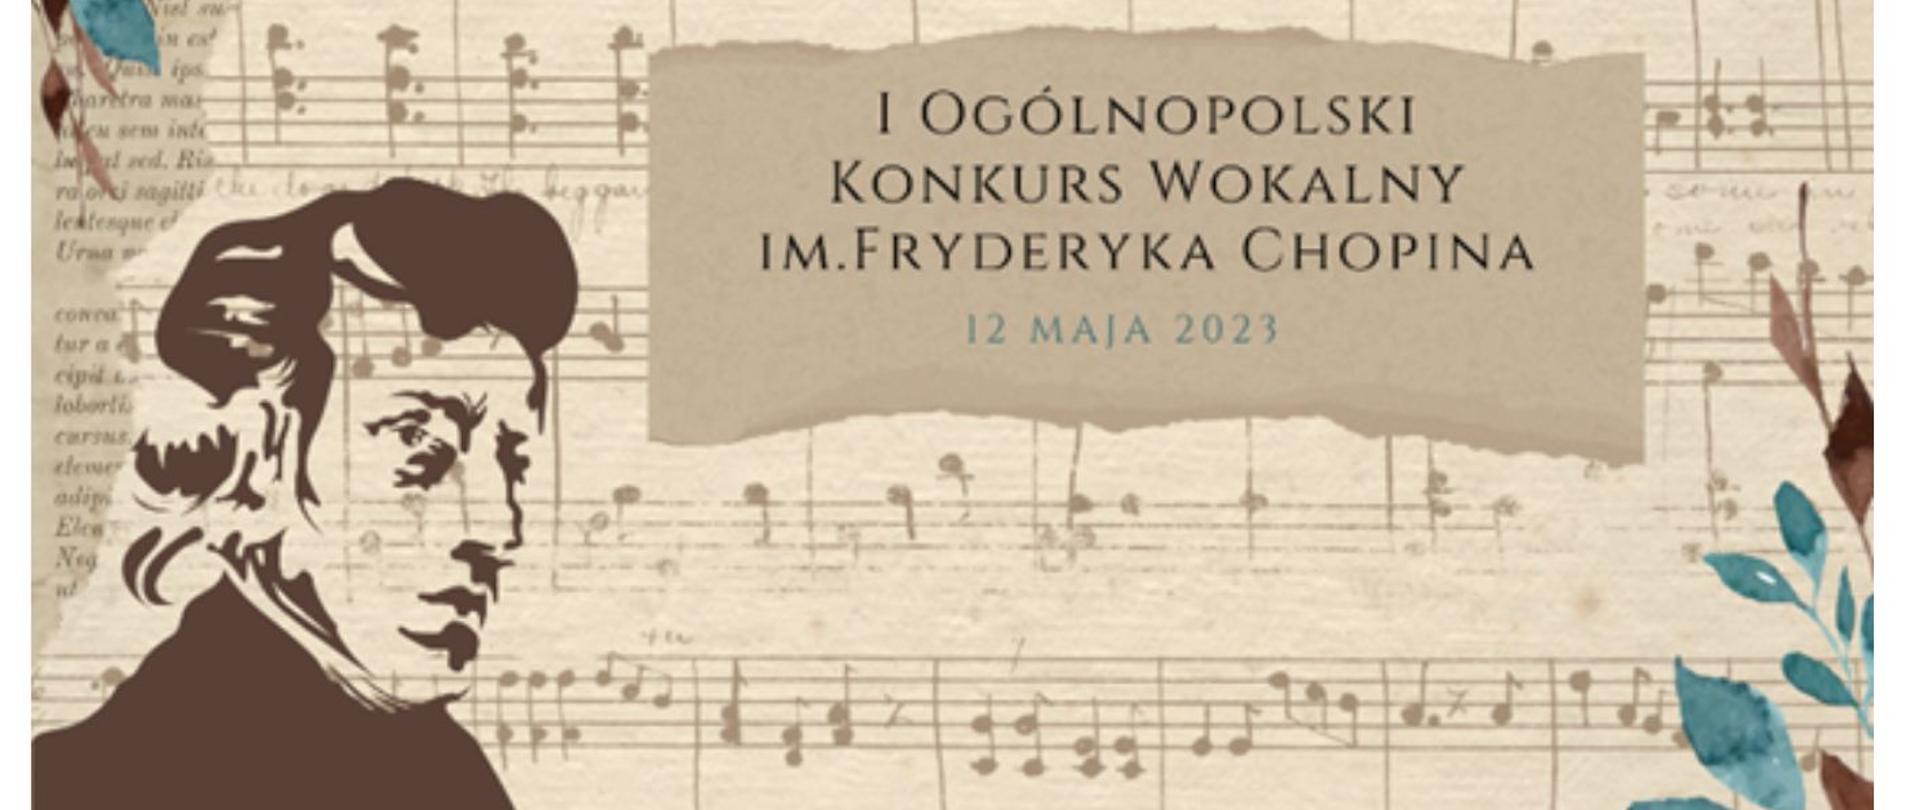 na tle nut widnieje napis: "I Ogólnopolski Konkurs Wokalny im. Fryderyka Chopina, 12 maja 2023 r"